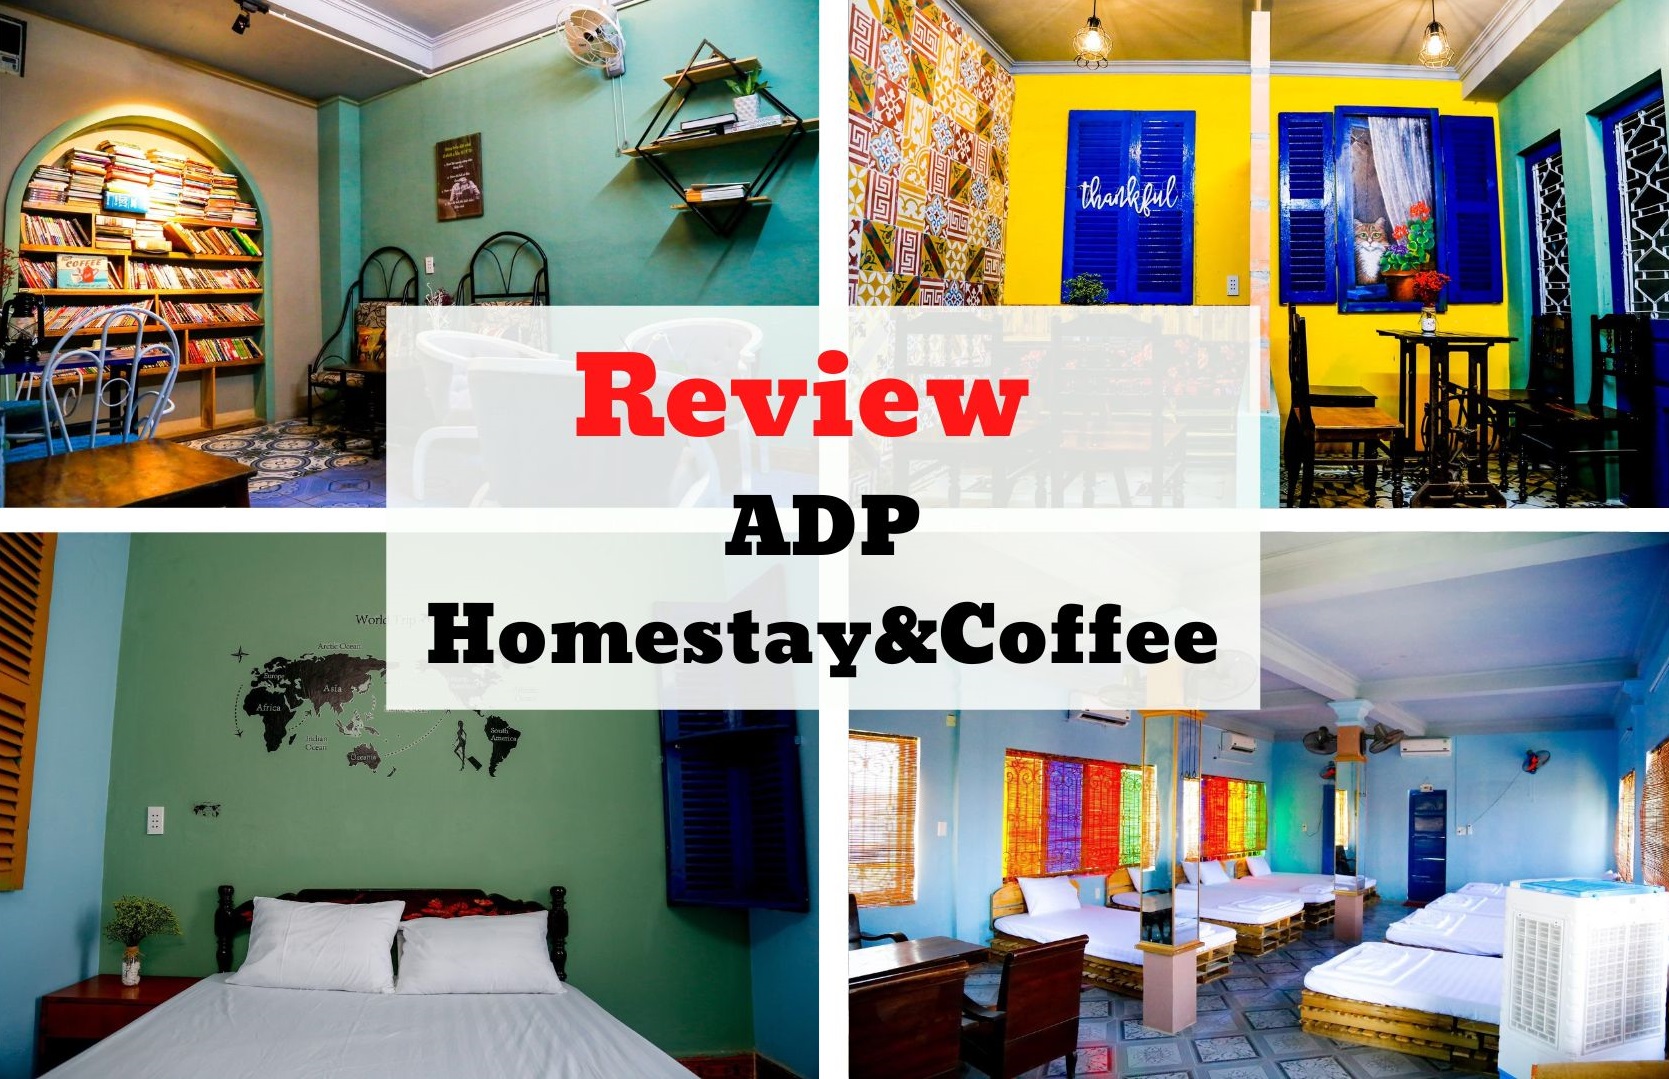 Review ADP Homestay&Coffee - Homestay 100 cửa sổ lá sách tại Quảng Bình